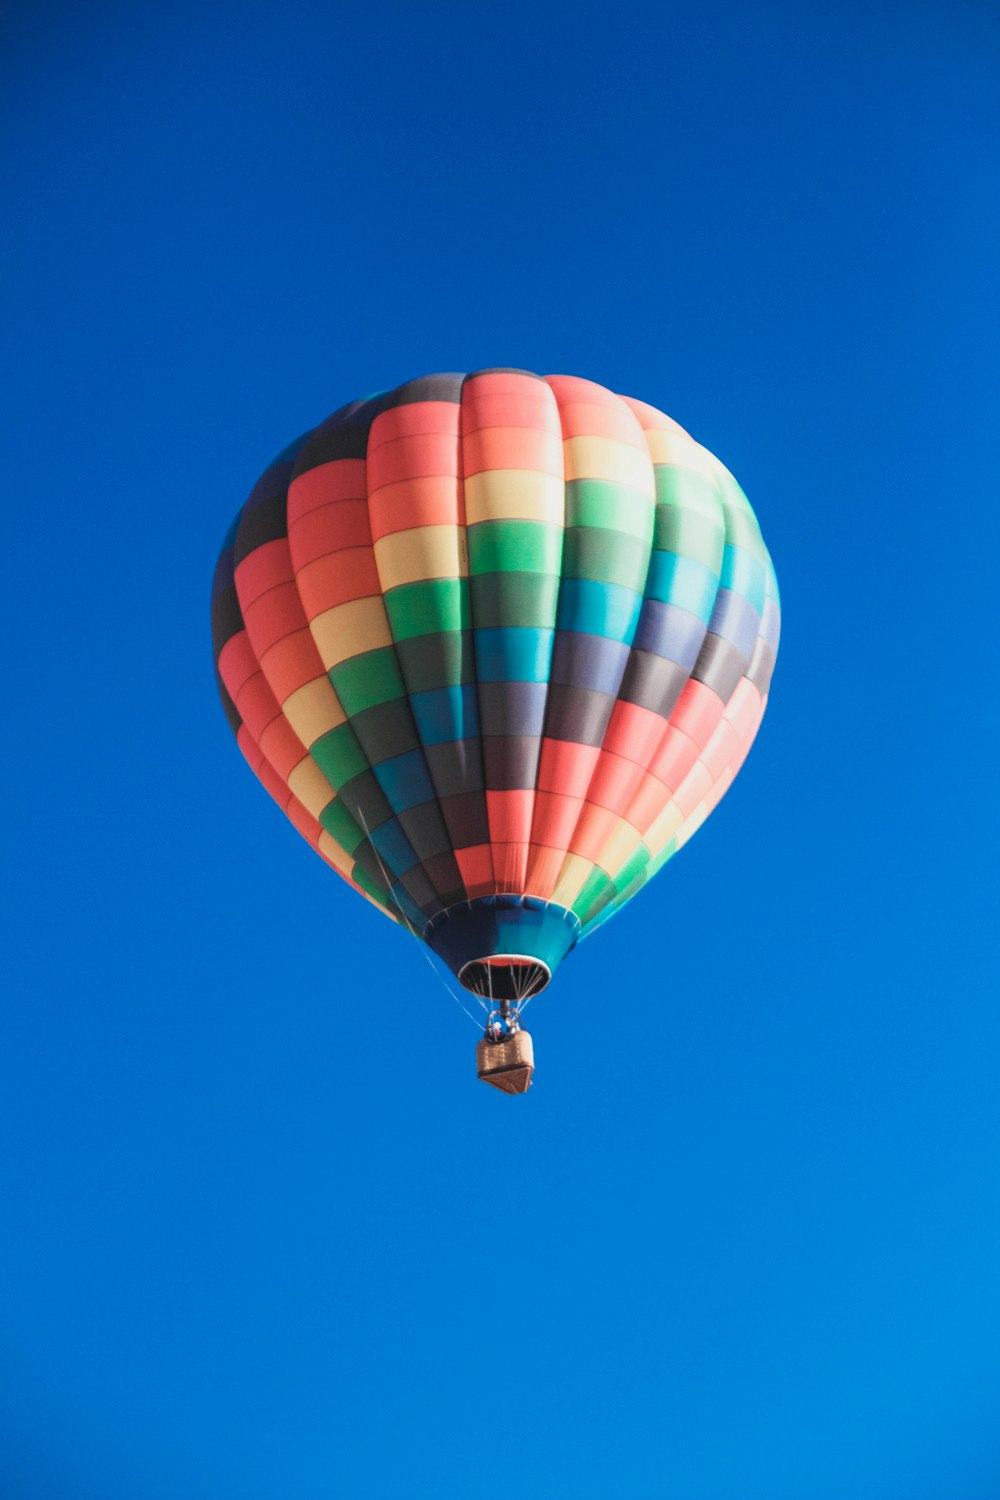 Más de 750 imágenes de globos aerostáticos | Descargar imágenes gratis en  Unsplash